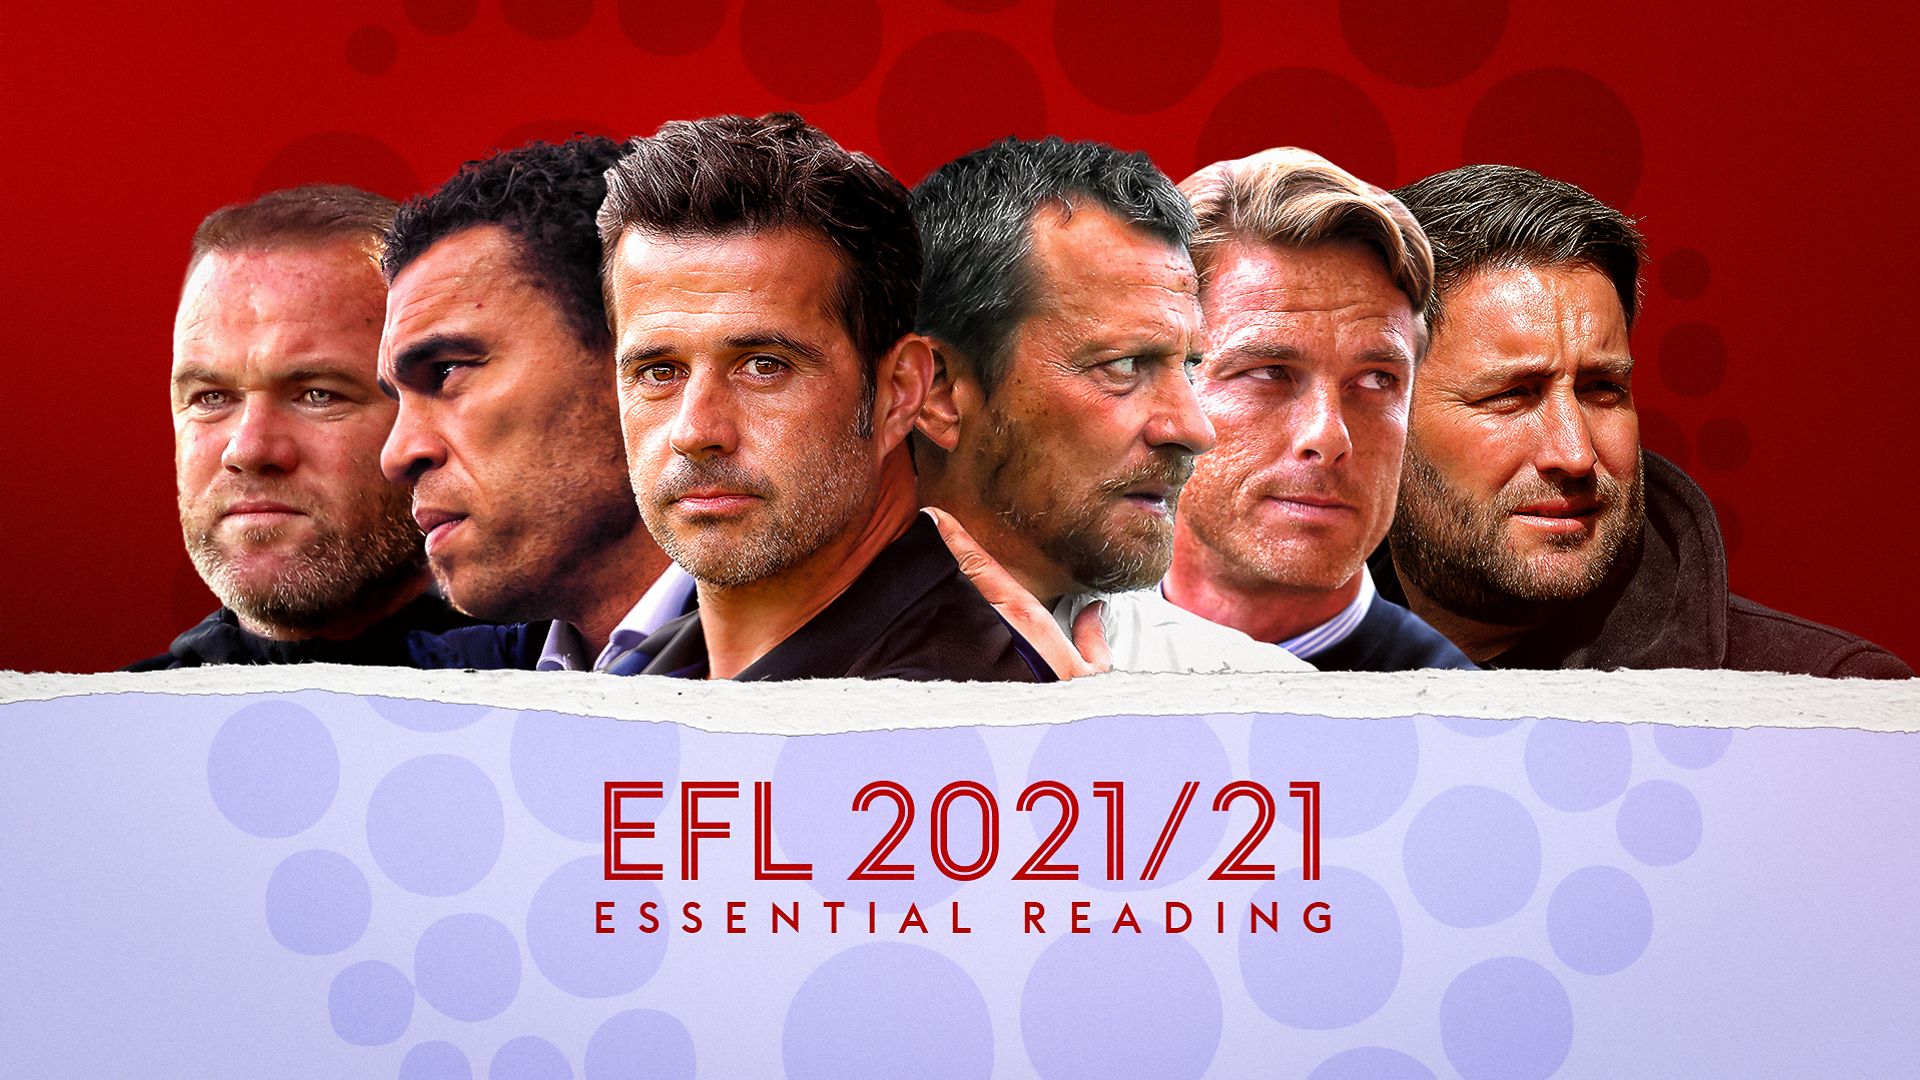 EFL 2021/22: Essential reading